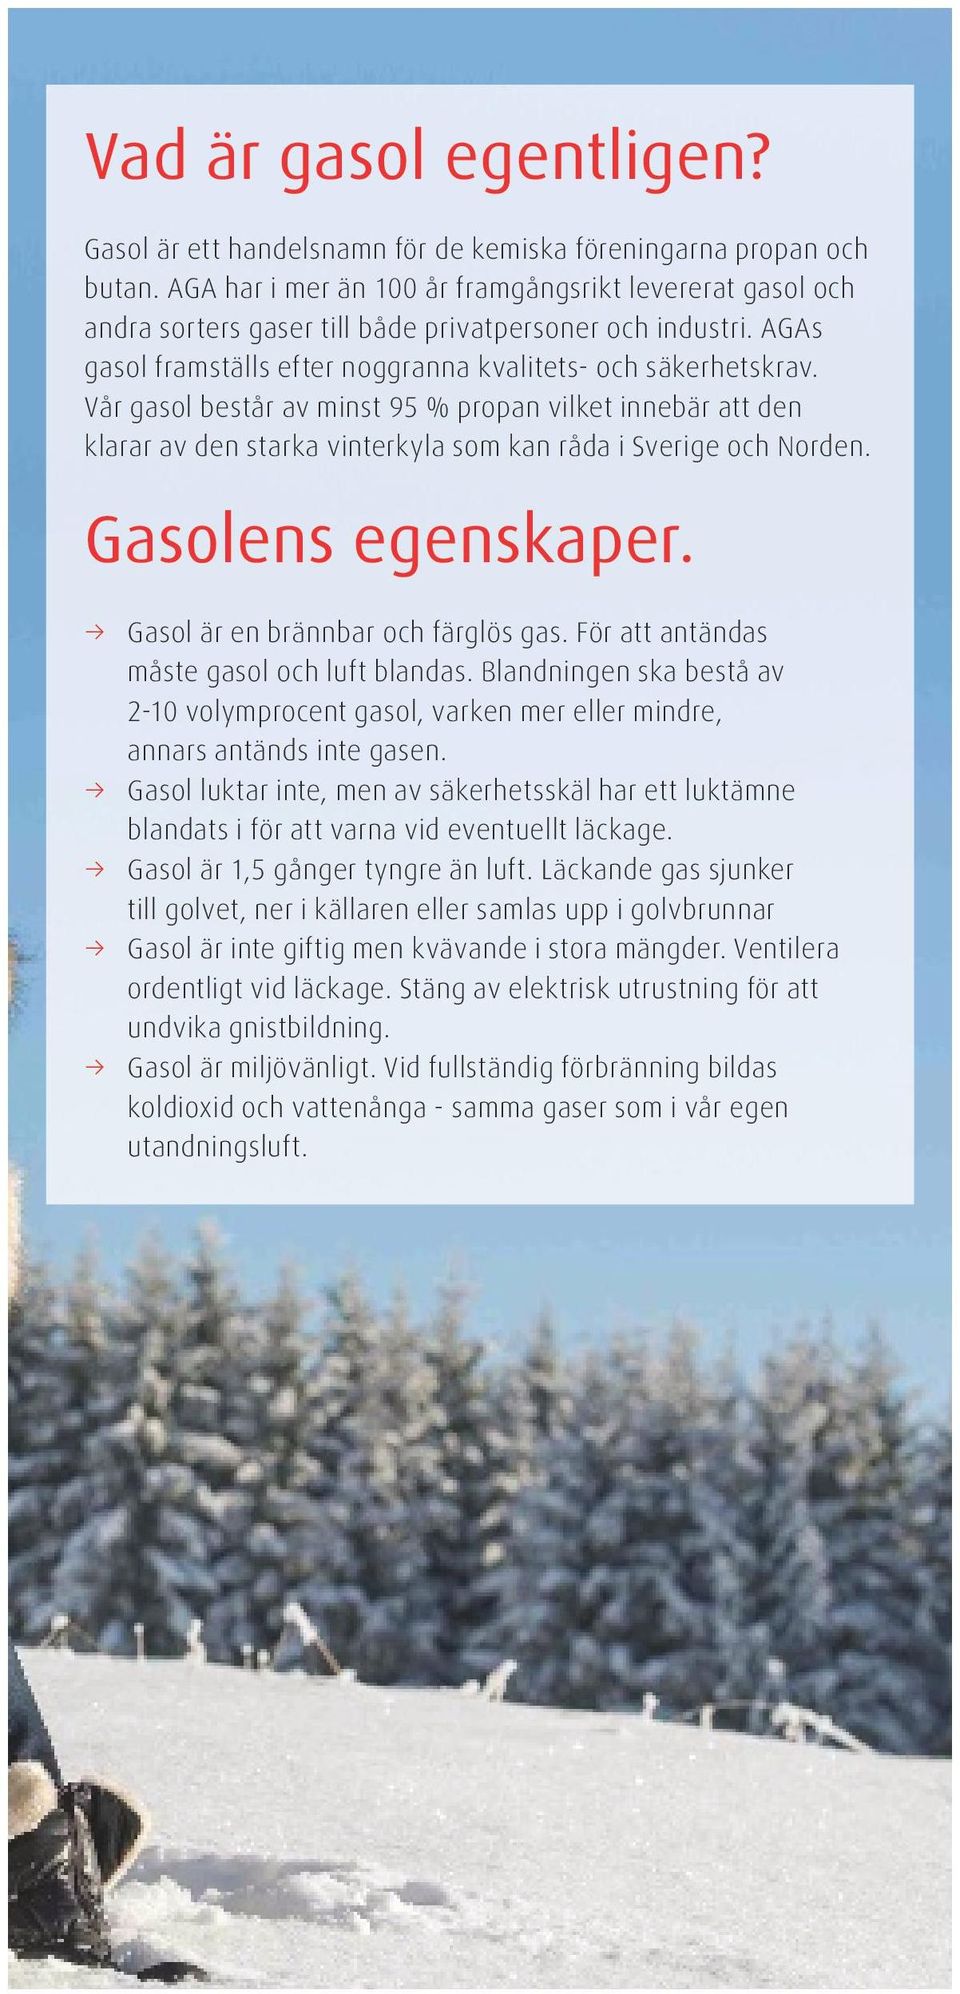 Vår gasol består av minst 95 % propan vilket innebär att den klarar av den starka vinterkyla som kan råda i Sverige och Norden. Gasolens egenskaper. Gasol är en brännbar och färglös gas.